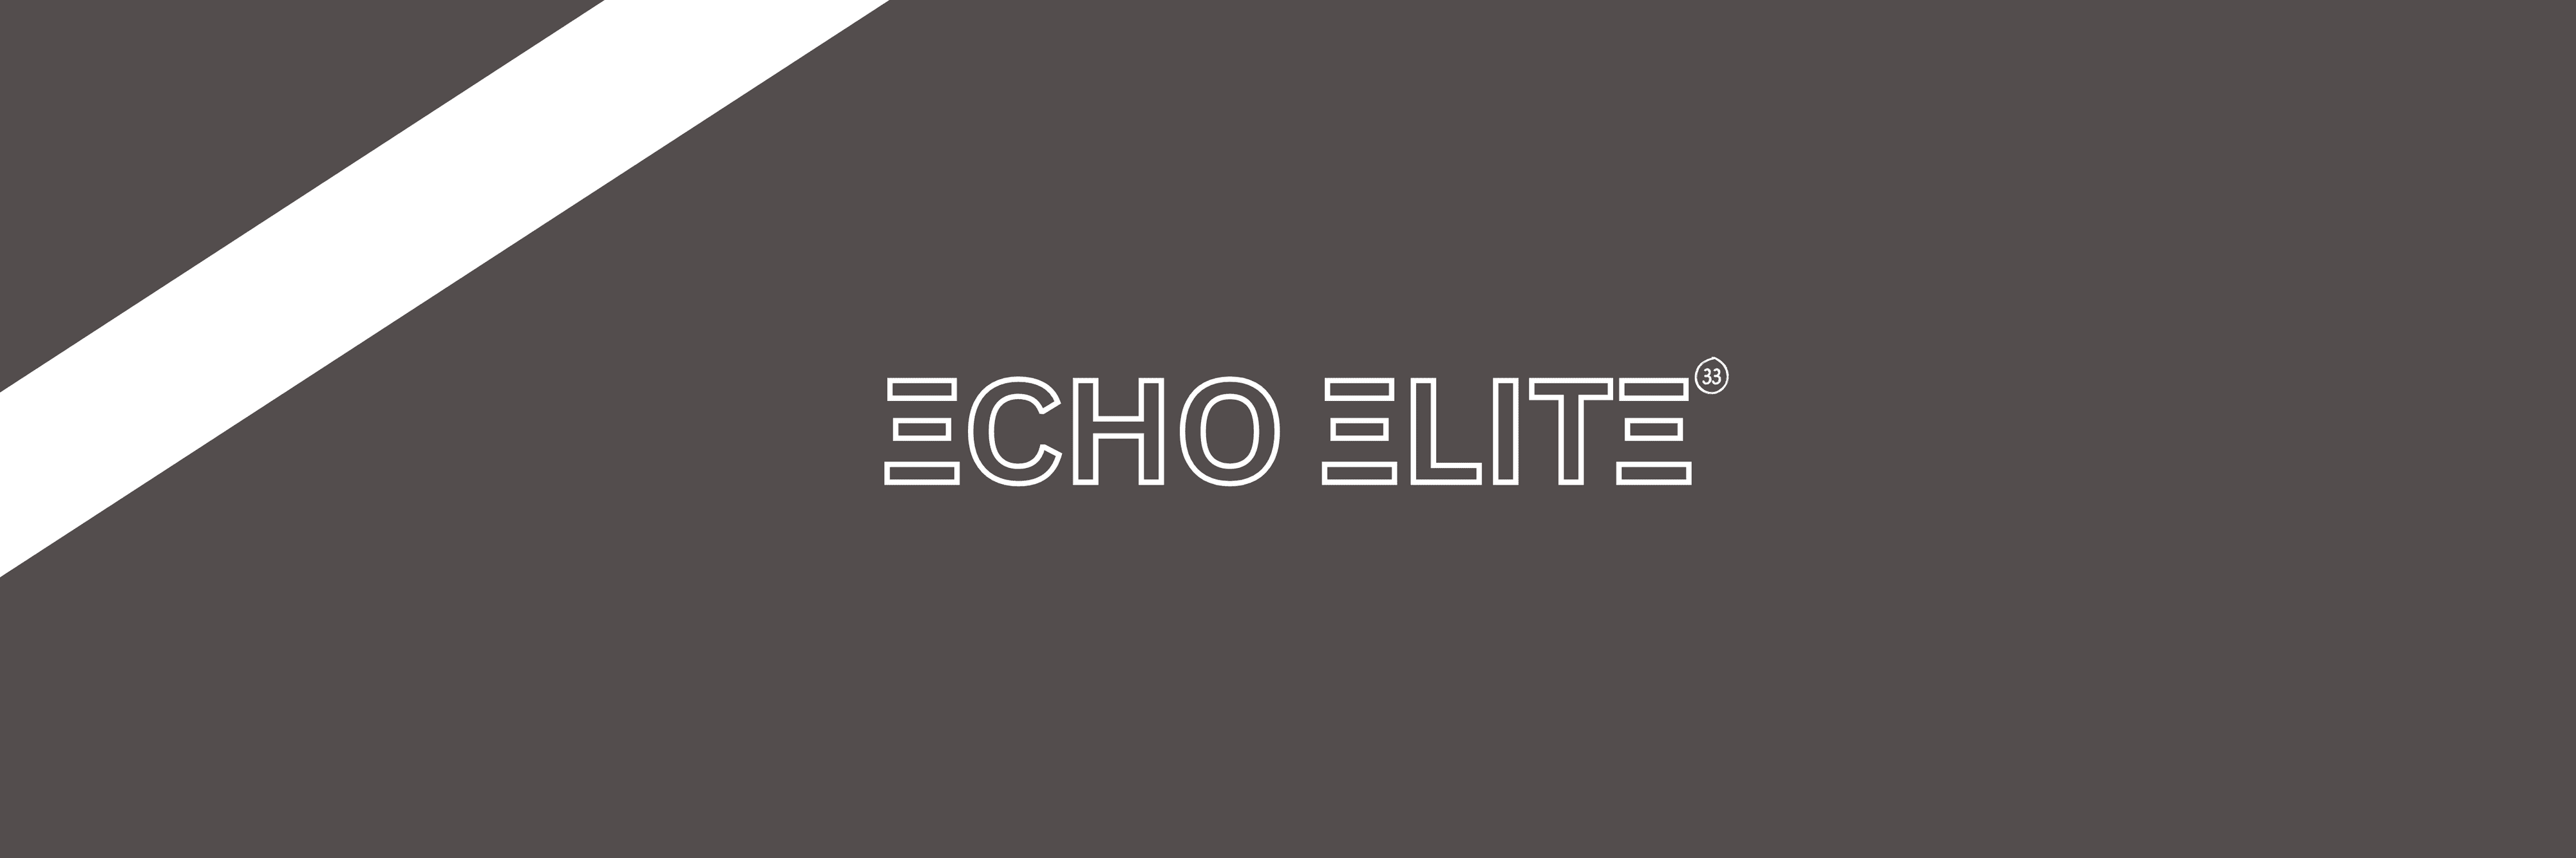 EchoTheLion banner